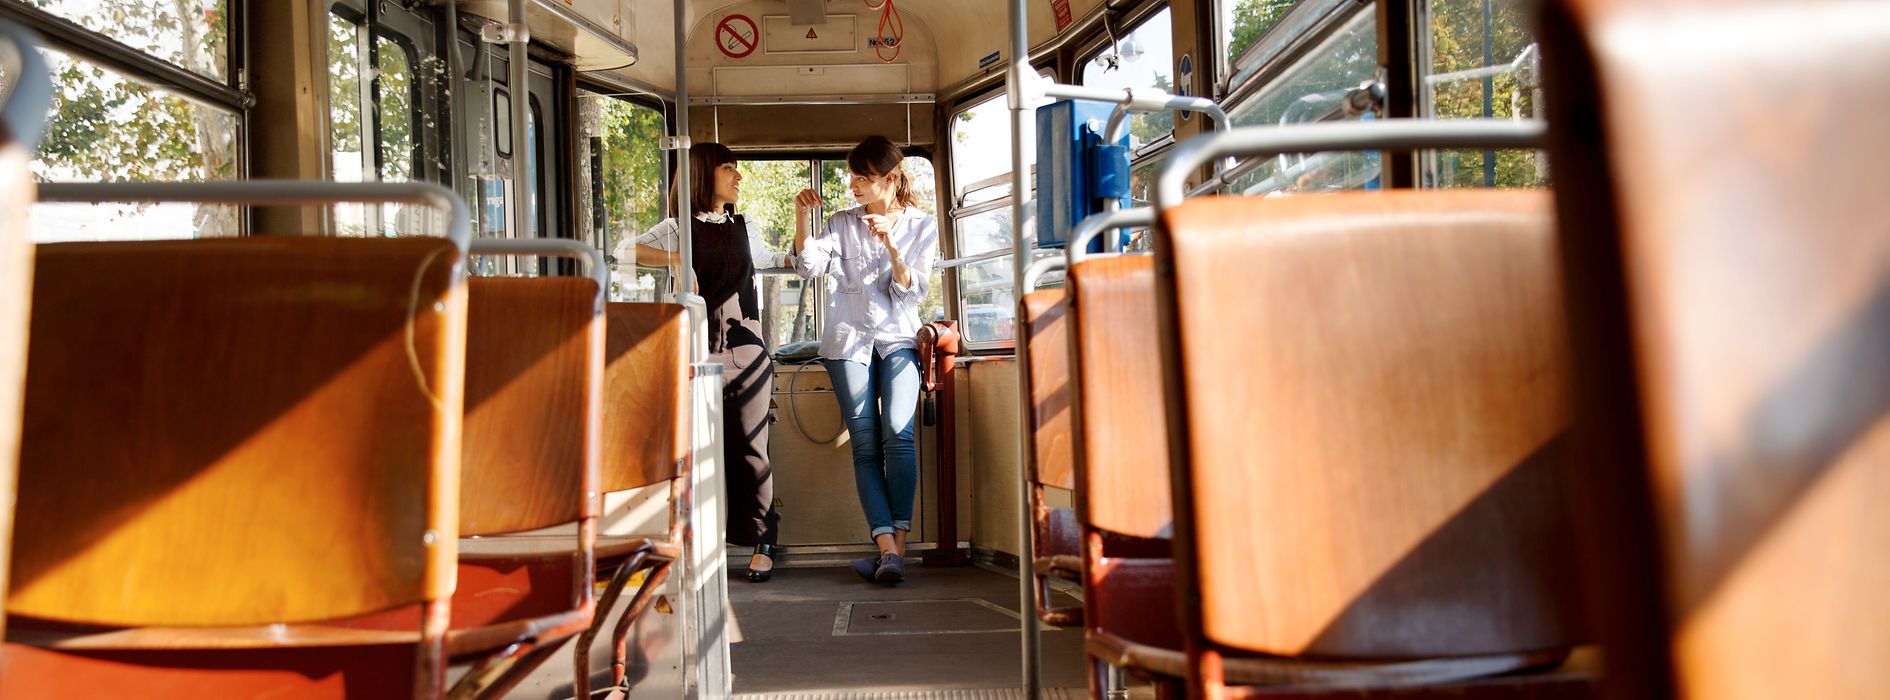 Zwei Frauen stehen in einer Straßenbahn und unterhalten sich, im Vordergrund leere Sitze